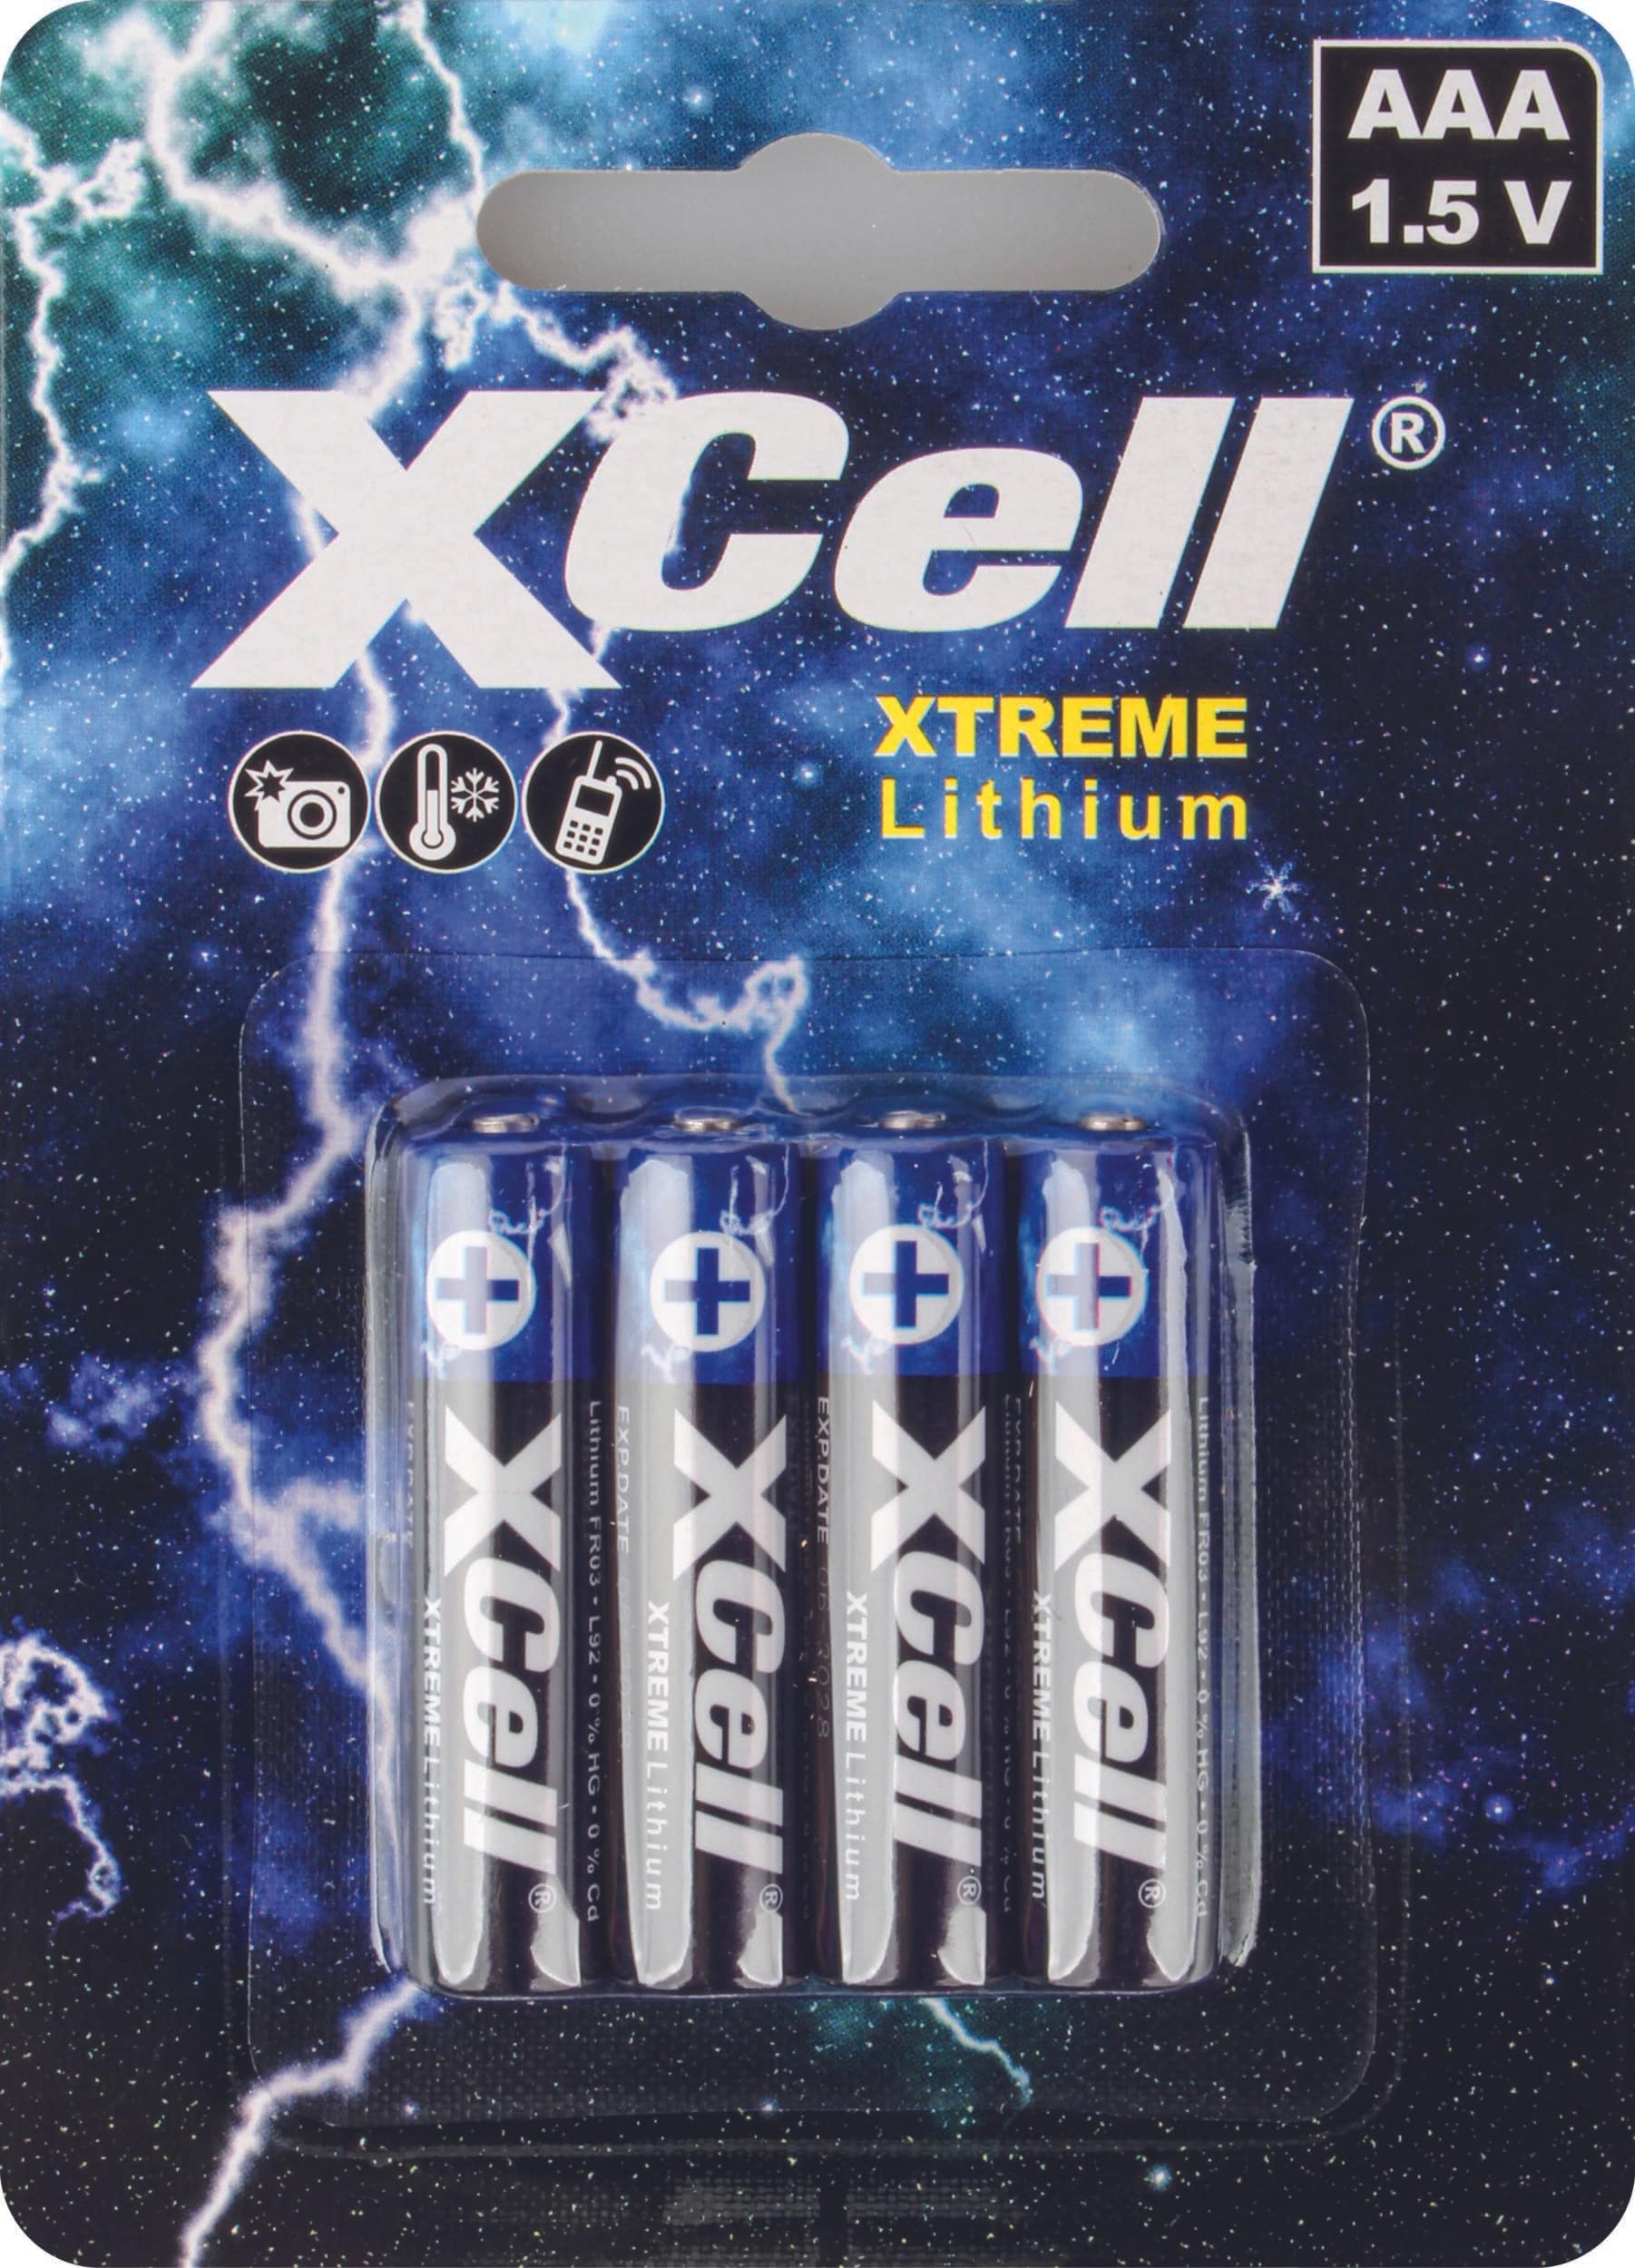 XCell 4er Xtreme Lithium Batterien - in verschiedenen Größen